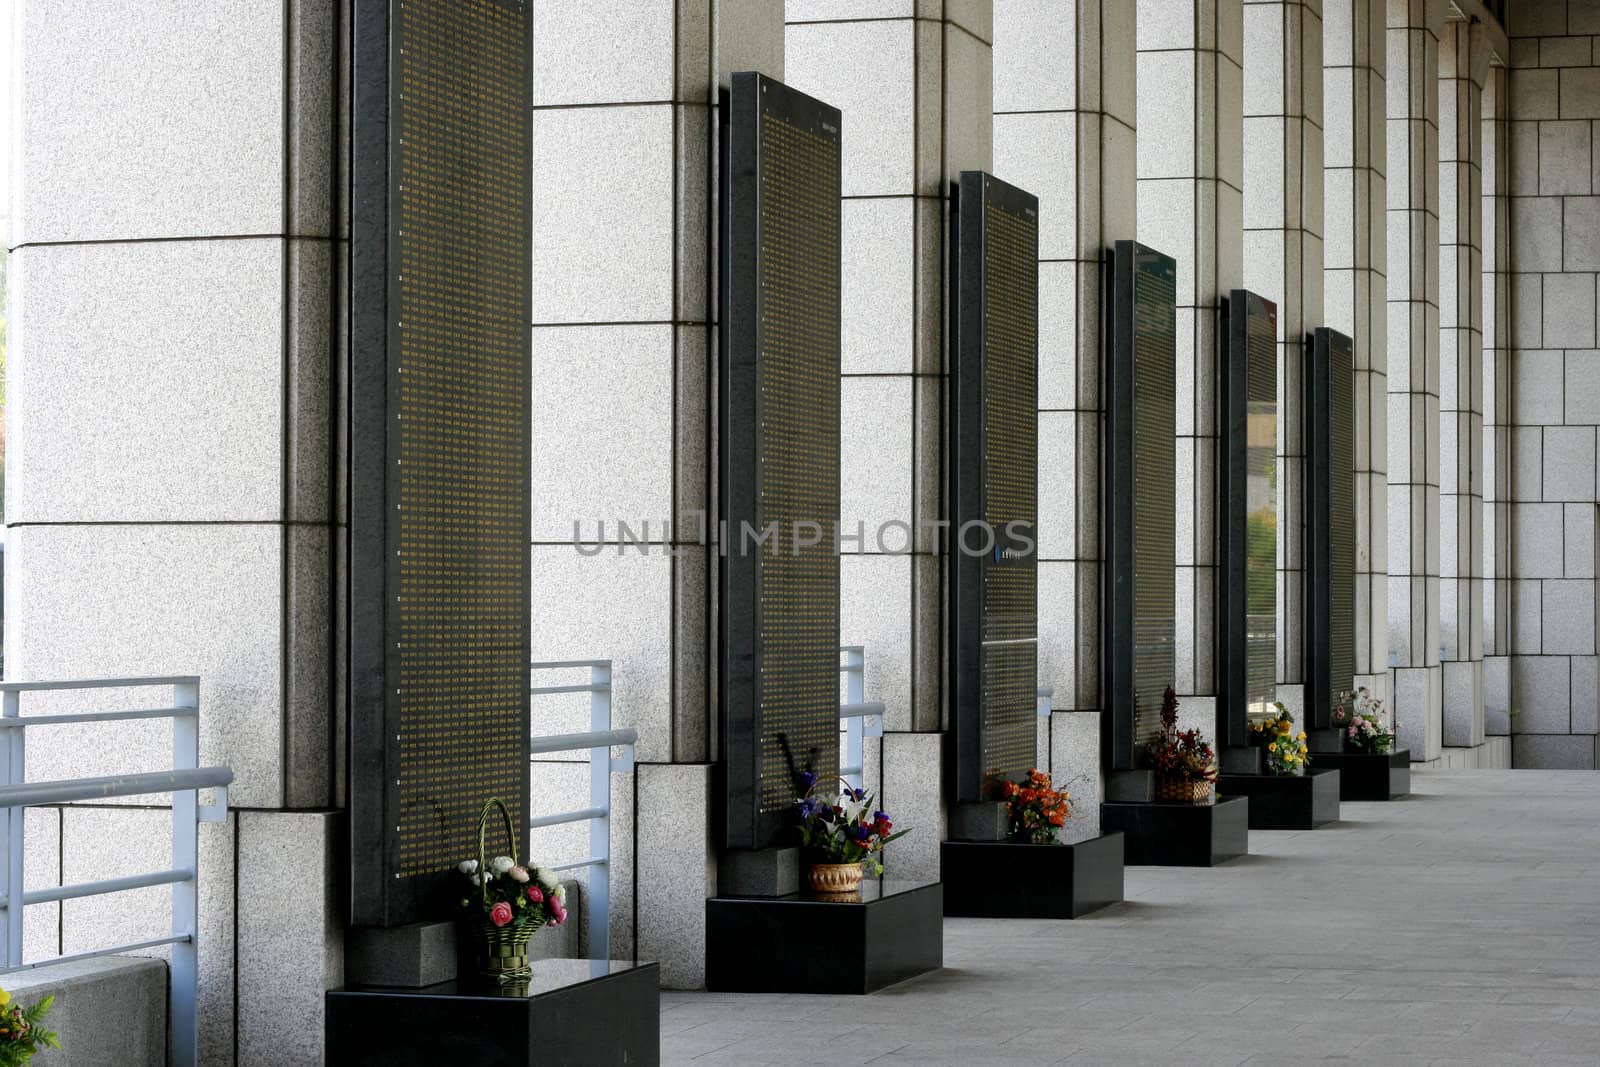 names etched in war memorial museum in Seoul korea